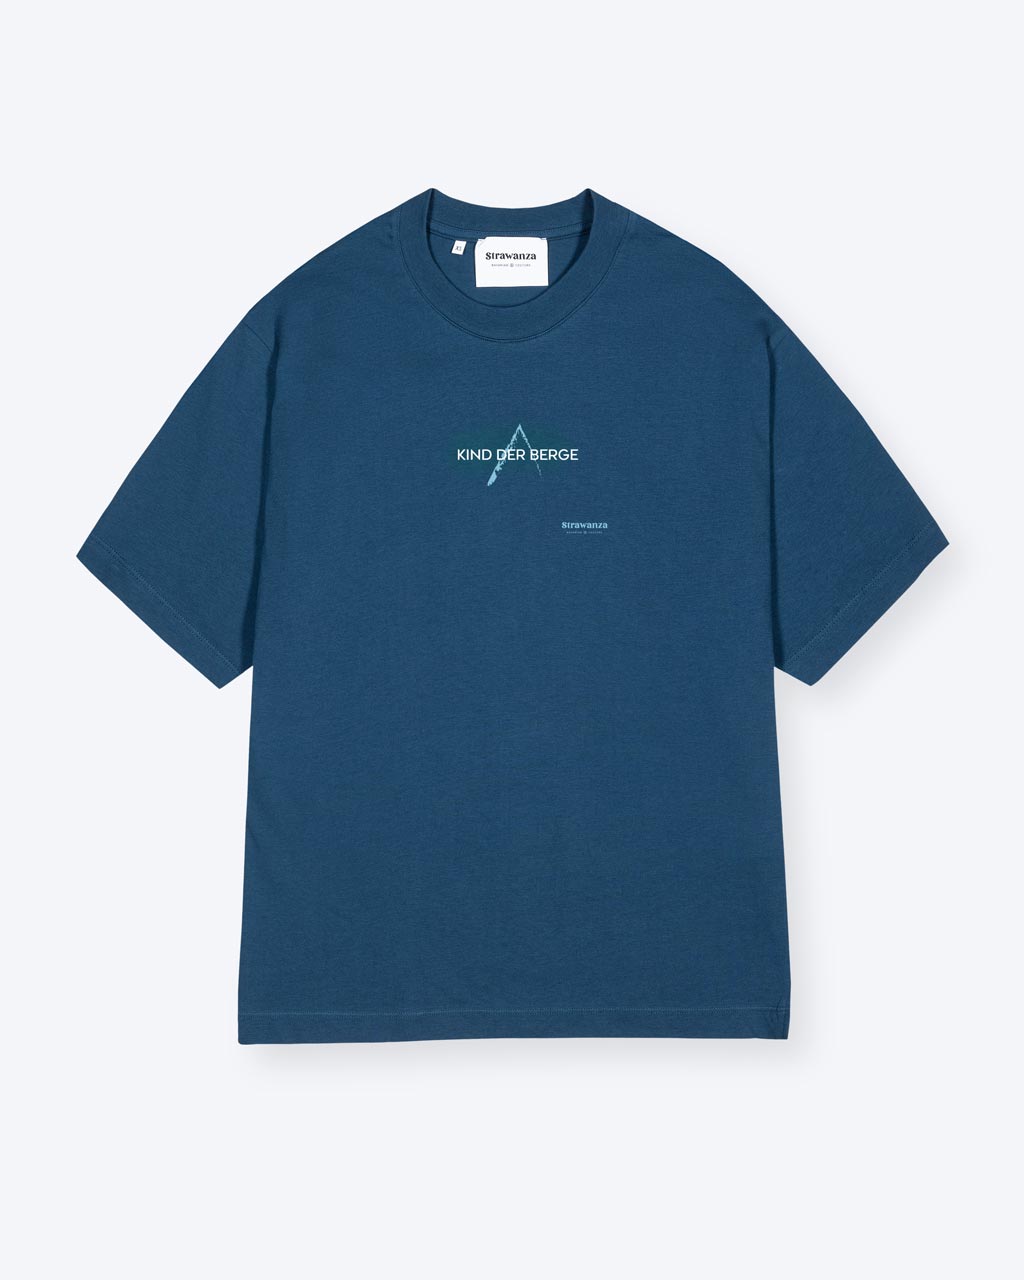 Ein blaues T-Shirt mit einem kleinen blauen Berg und einem weißen 